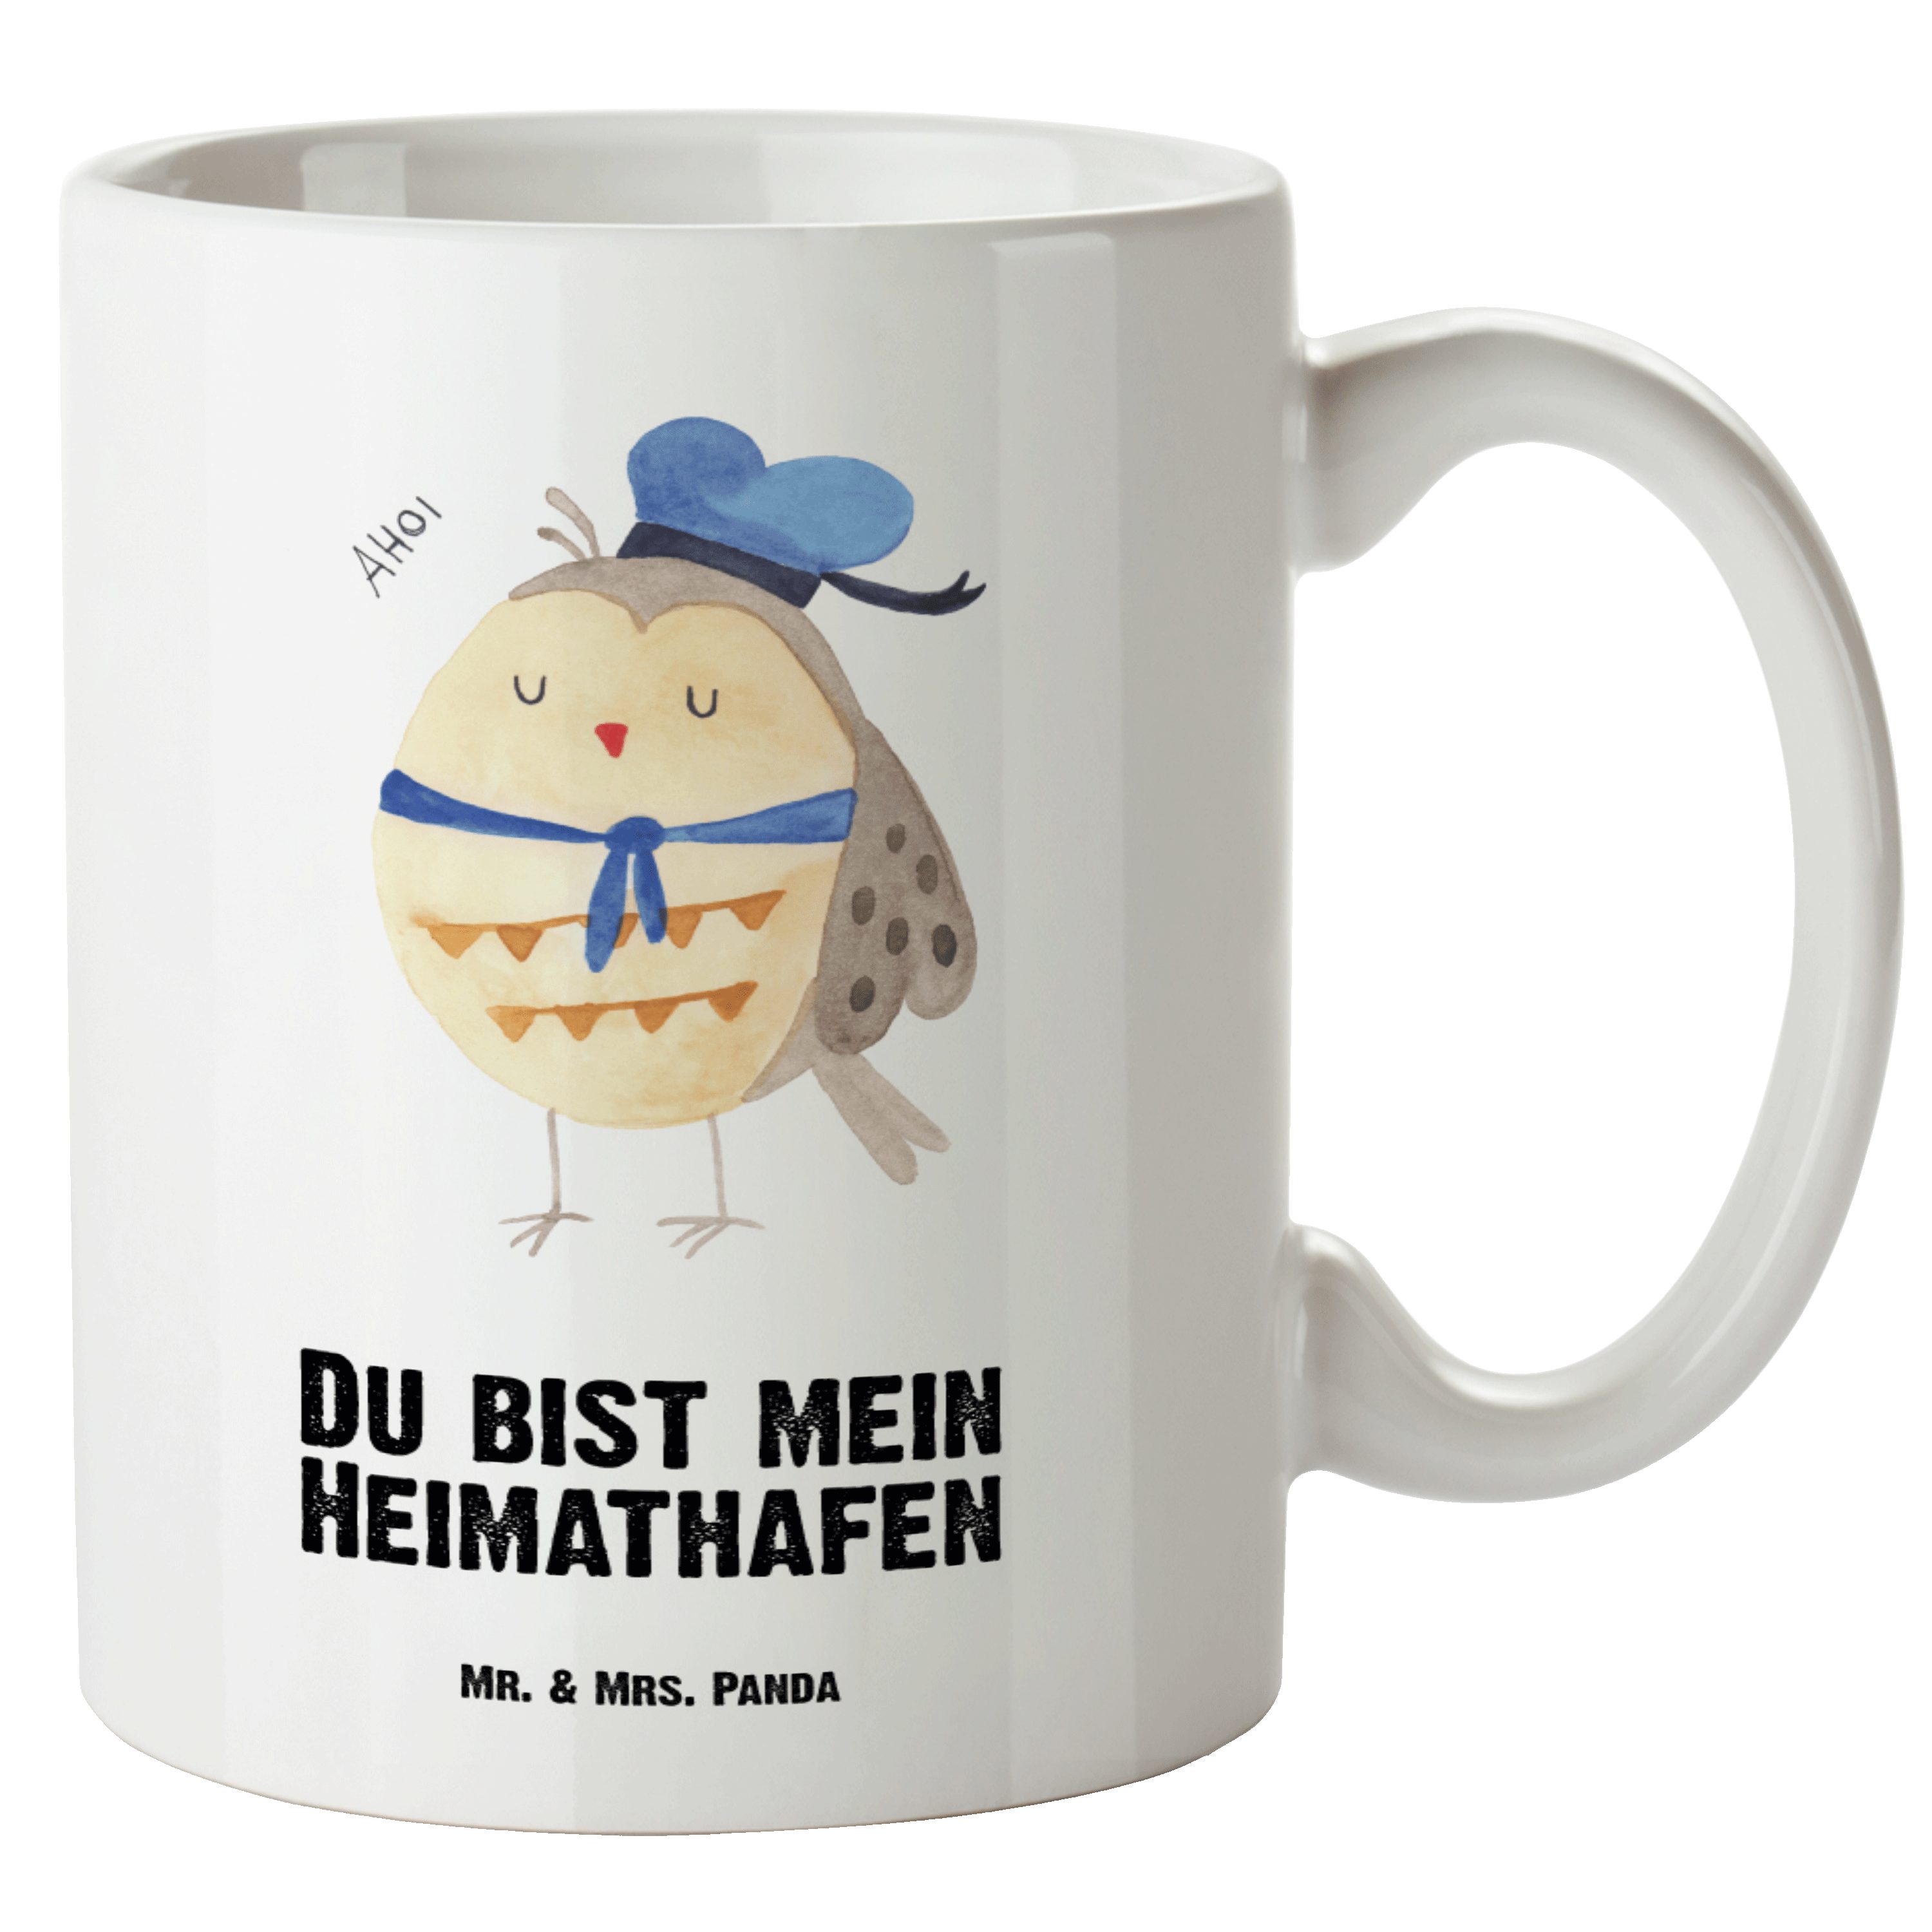 Mr. & Mrs. Panda Tasse Eule Matrosen - Weiß - Geschenk, XL Tasse, Wortspiel lustig, XL Beche, XL Tasse Keramik